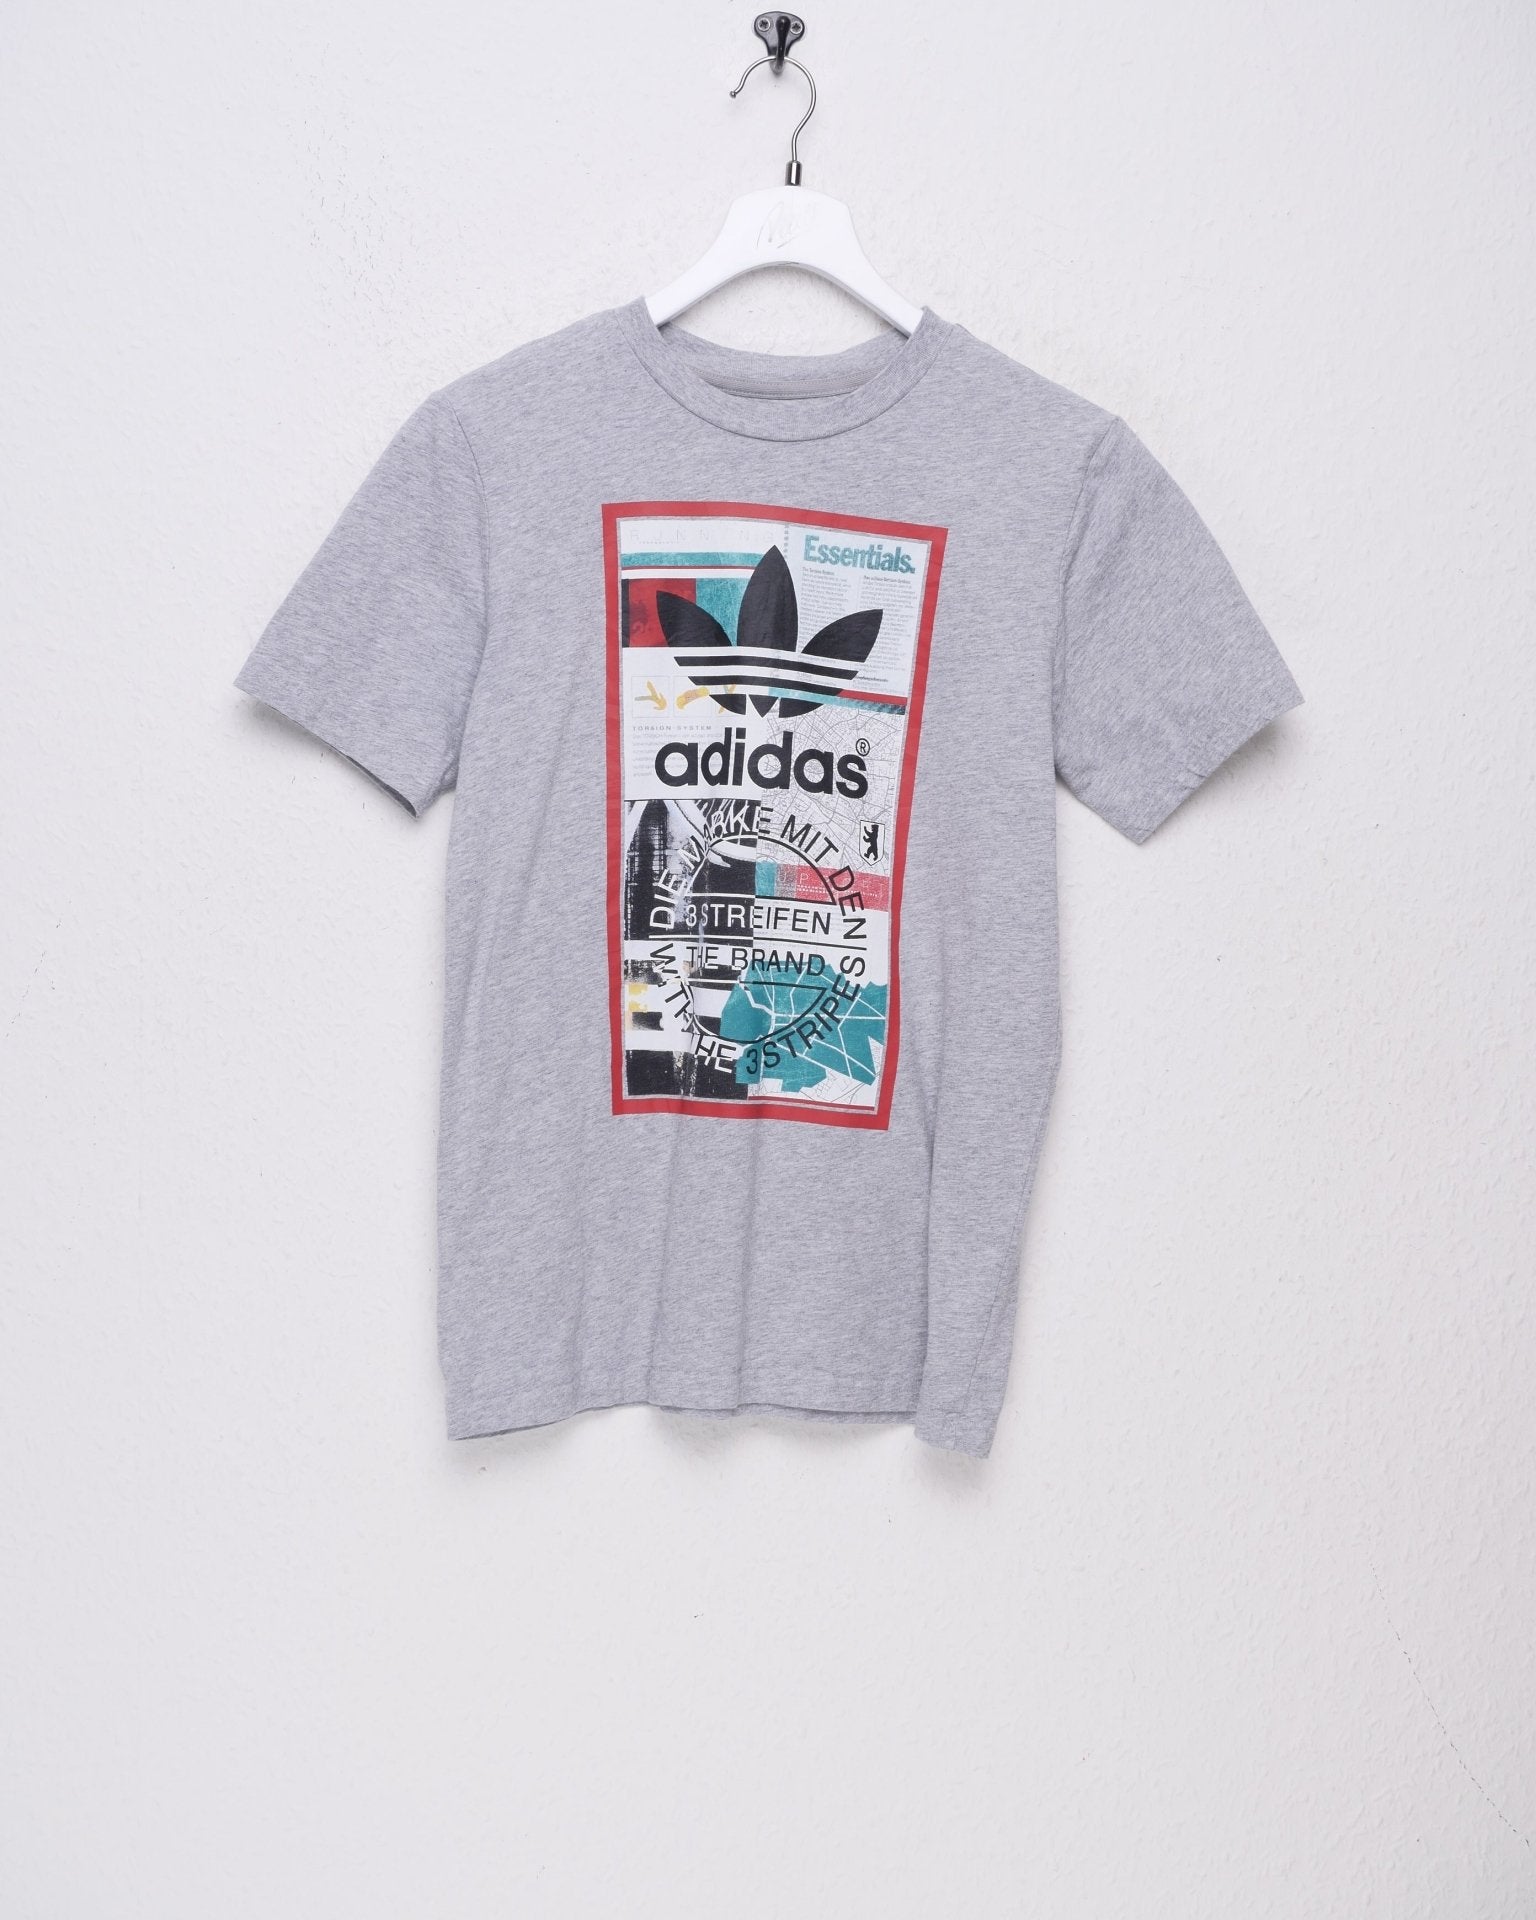 Adidas big printed Logo grey Shirt - Peeces